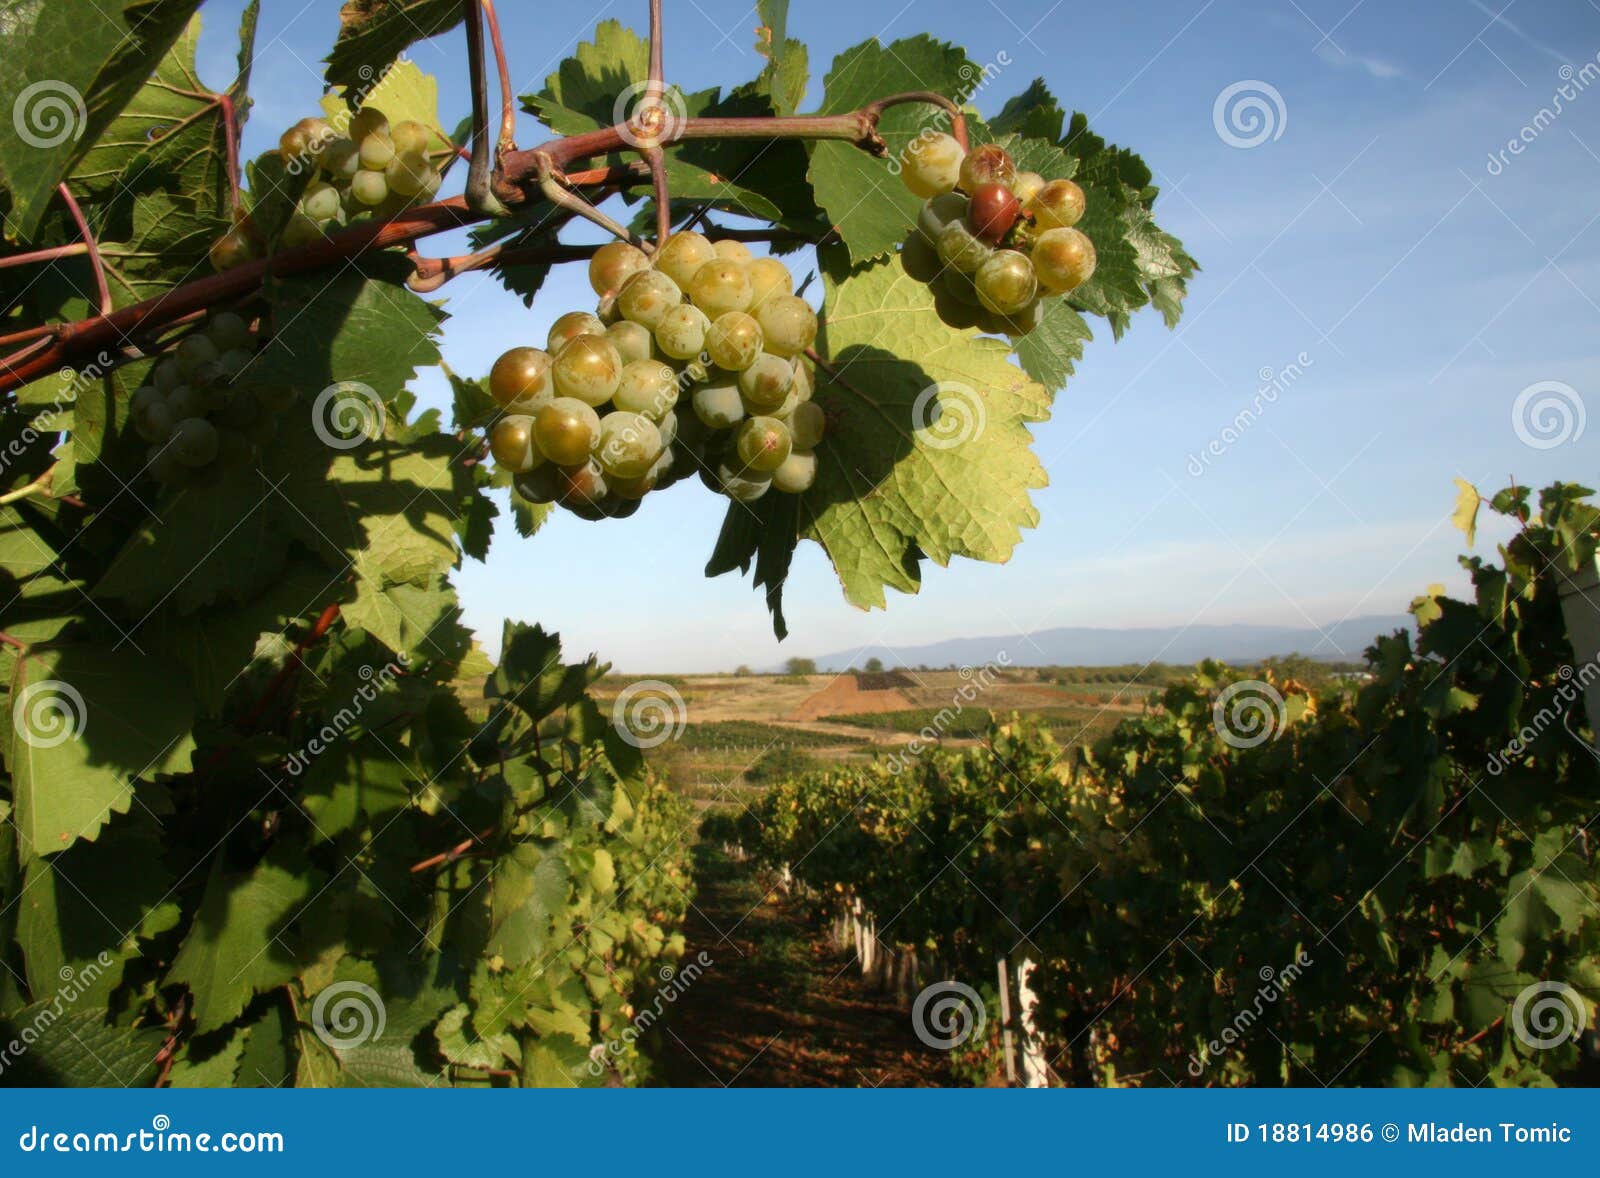 vineyard in serbia